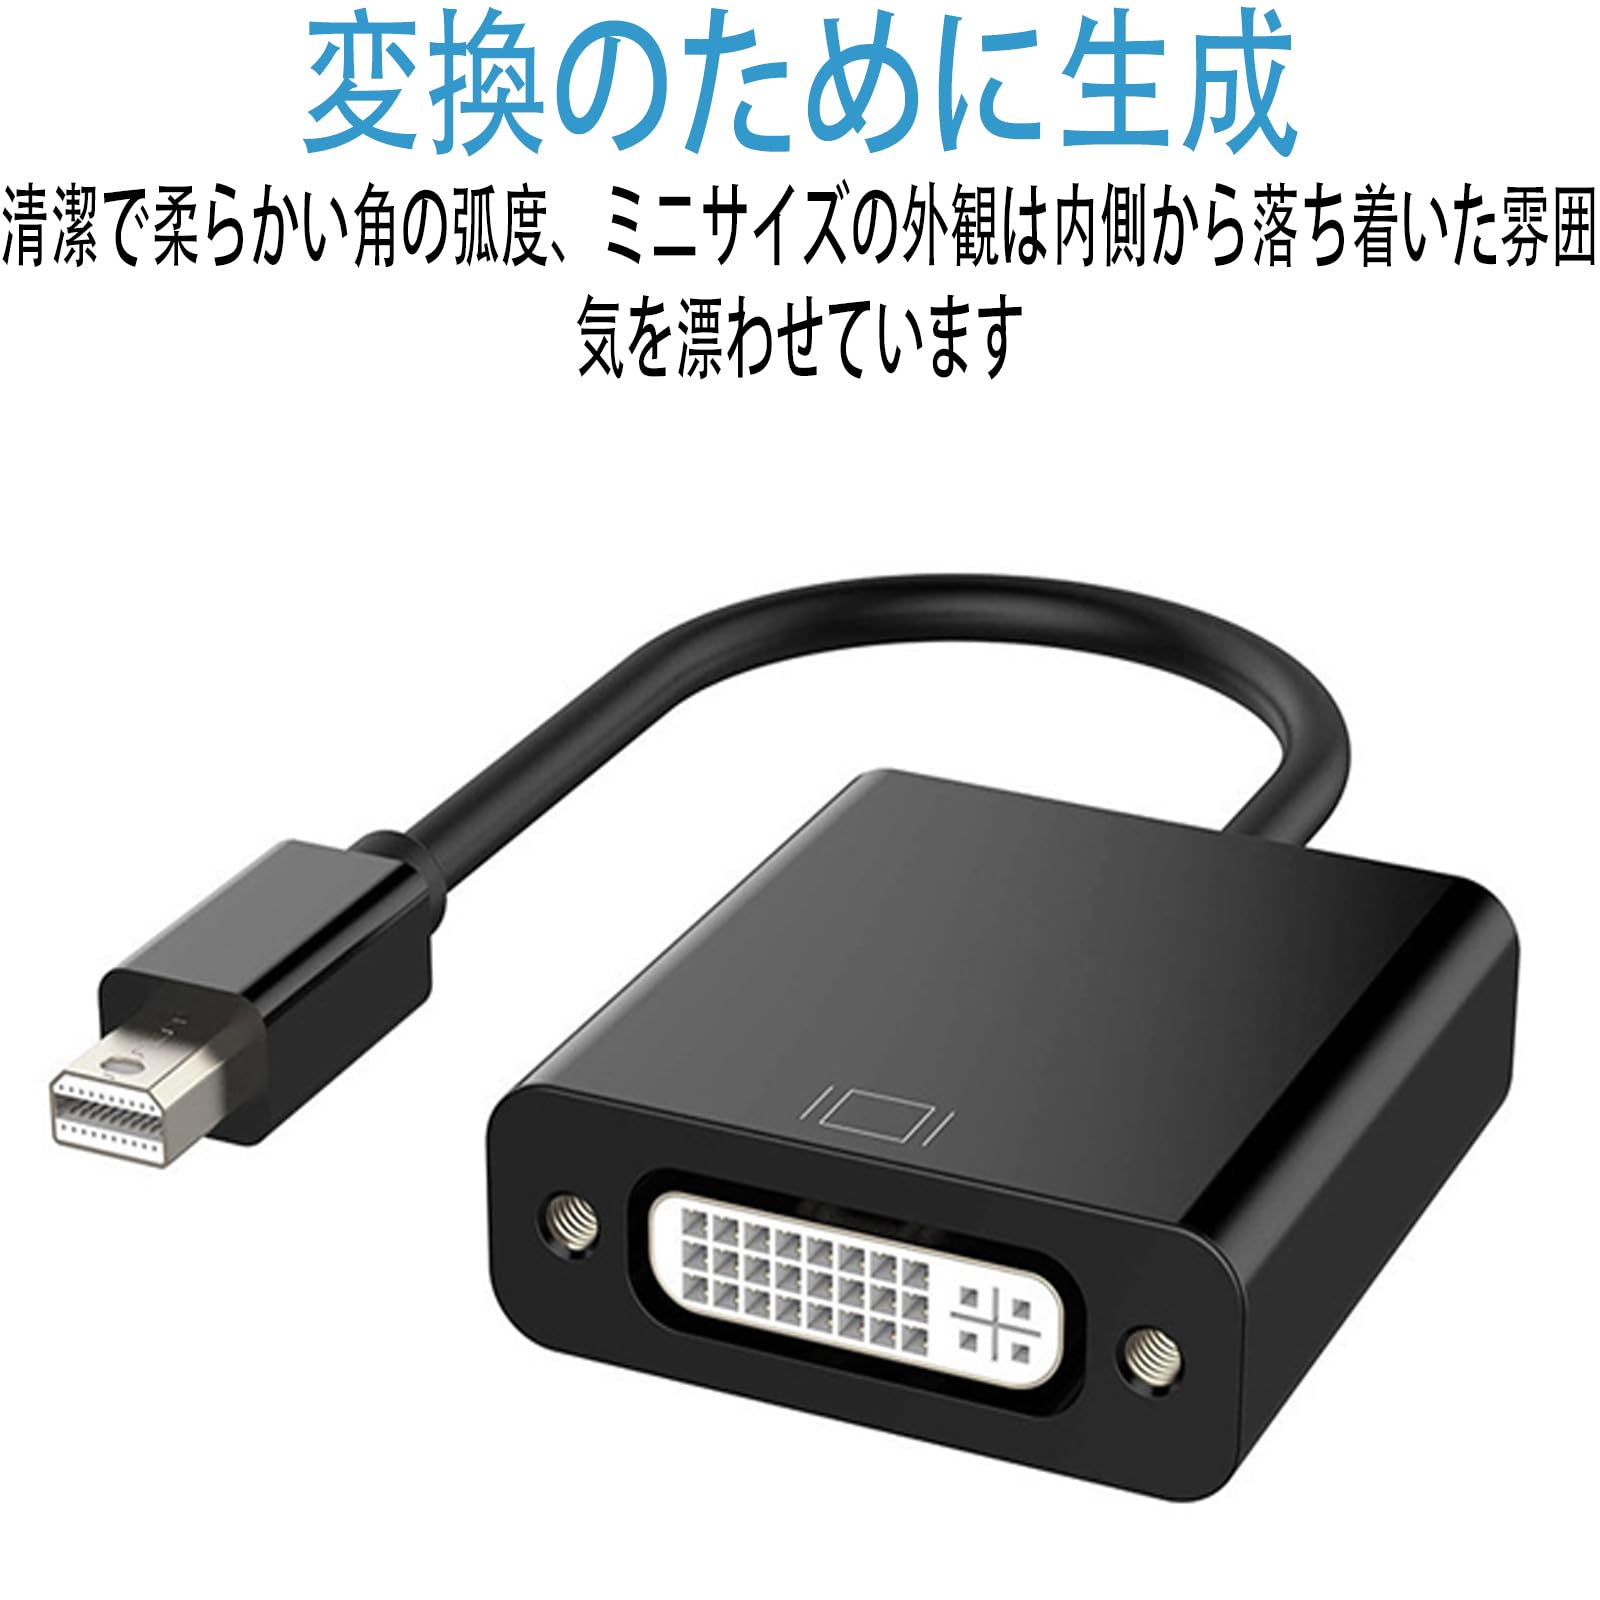 Mini DisplayPort - DVI24+5 изменение адаптер /mDP 1.2 - DVI-D видео изменение /1080p/ Mini дисплей порт -